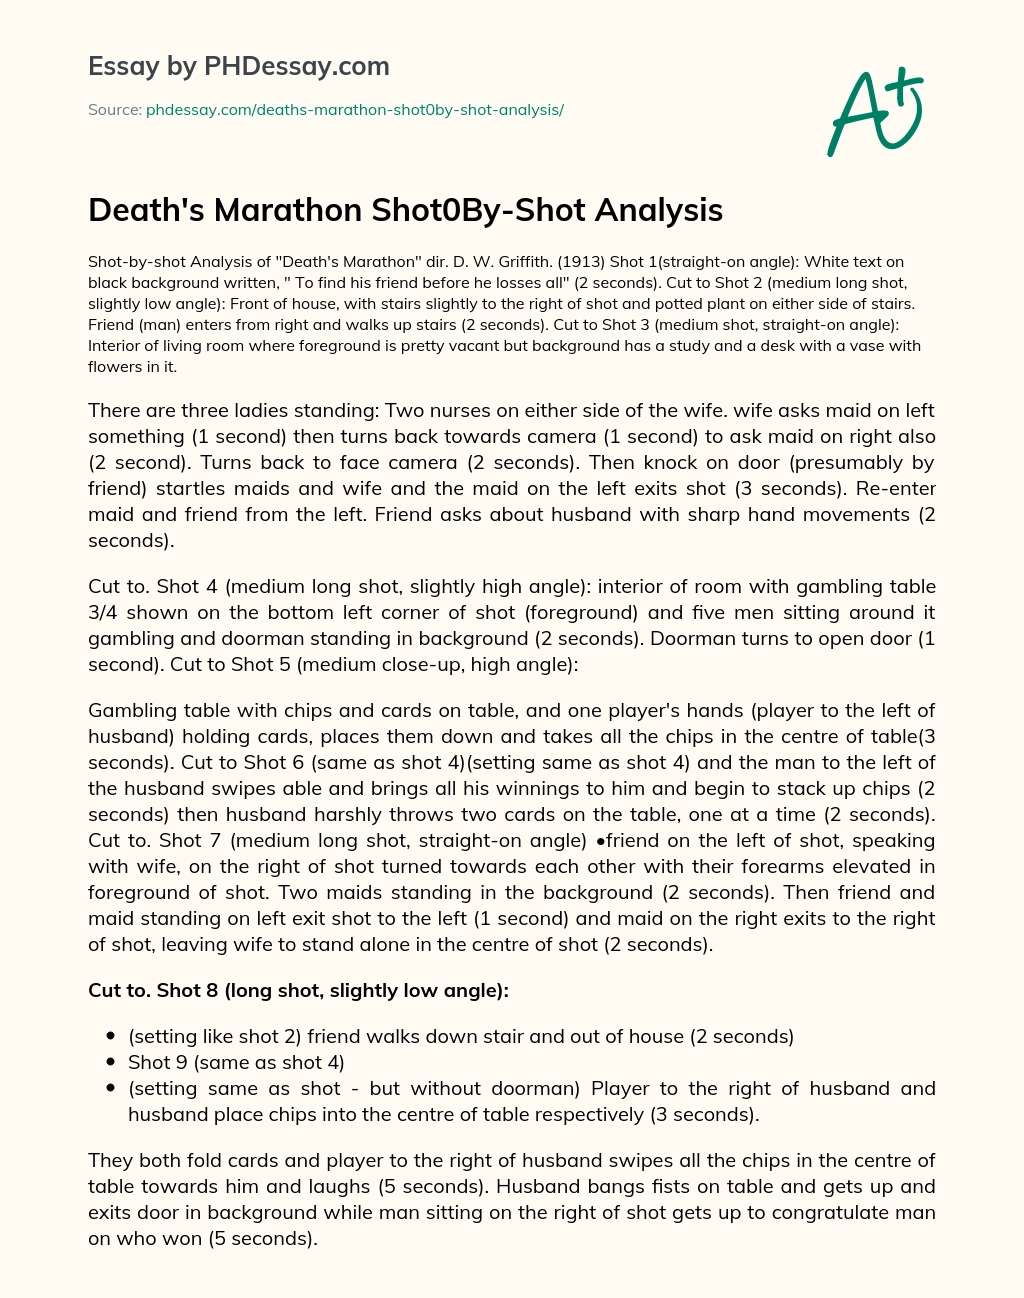 Death’s Marathon Shot0By-Shot Analysis essay